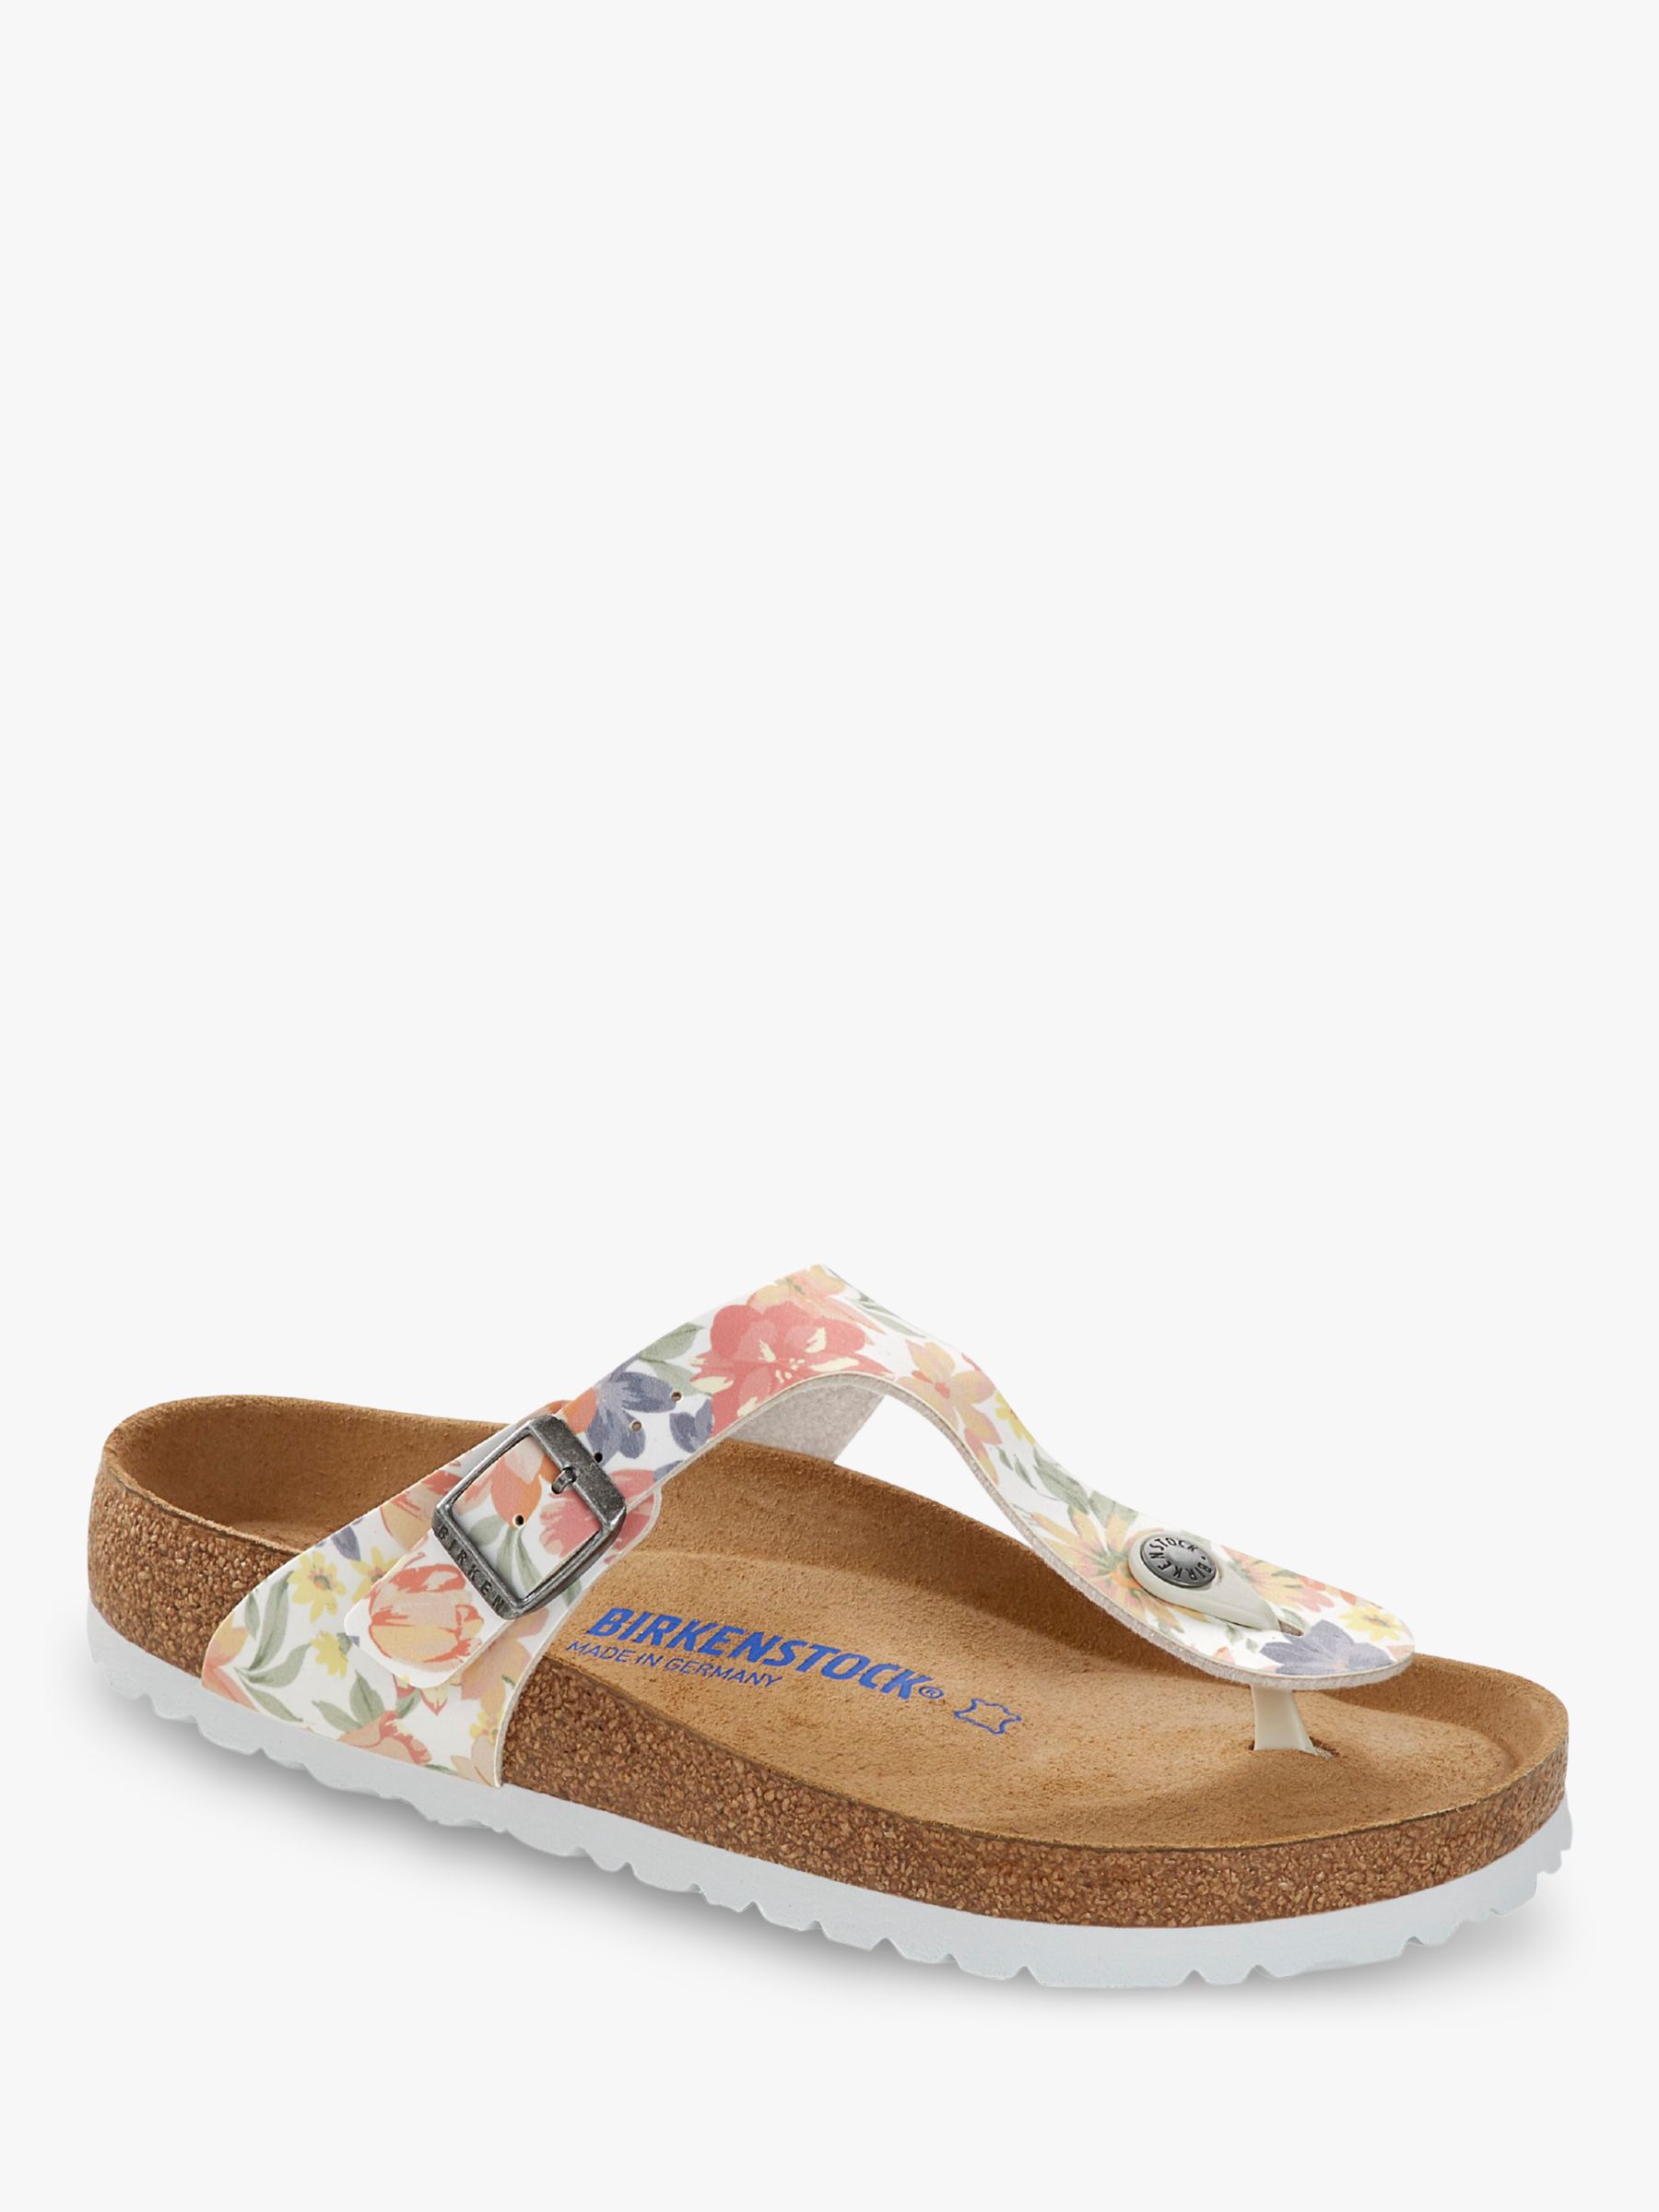 birkenstock floral sandals